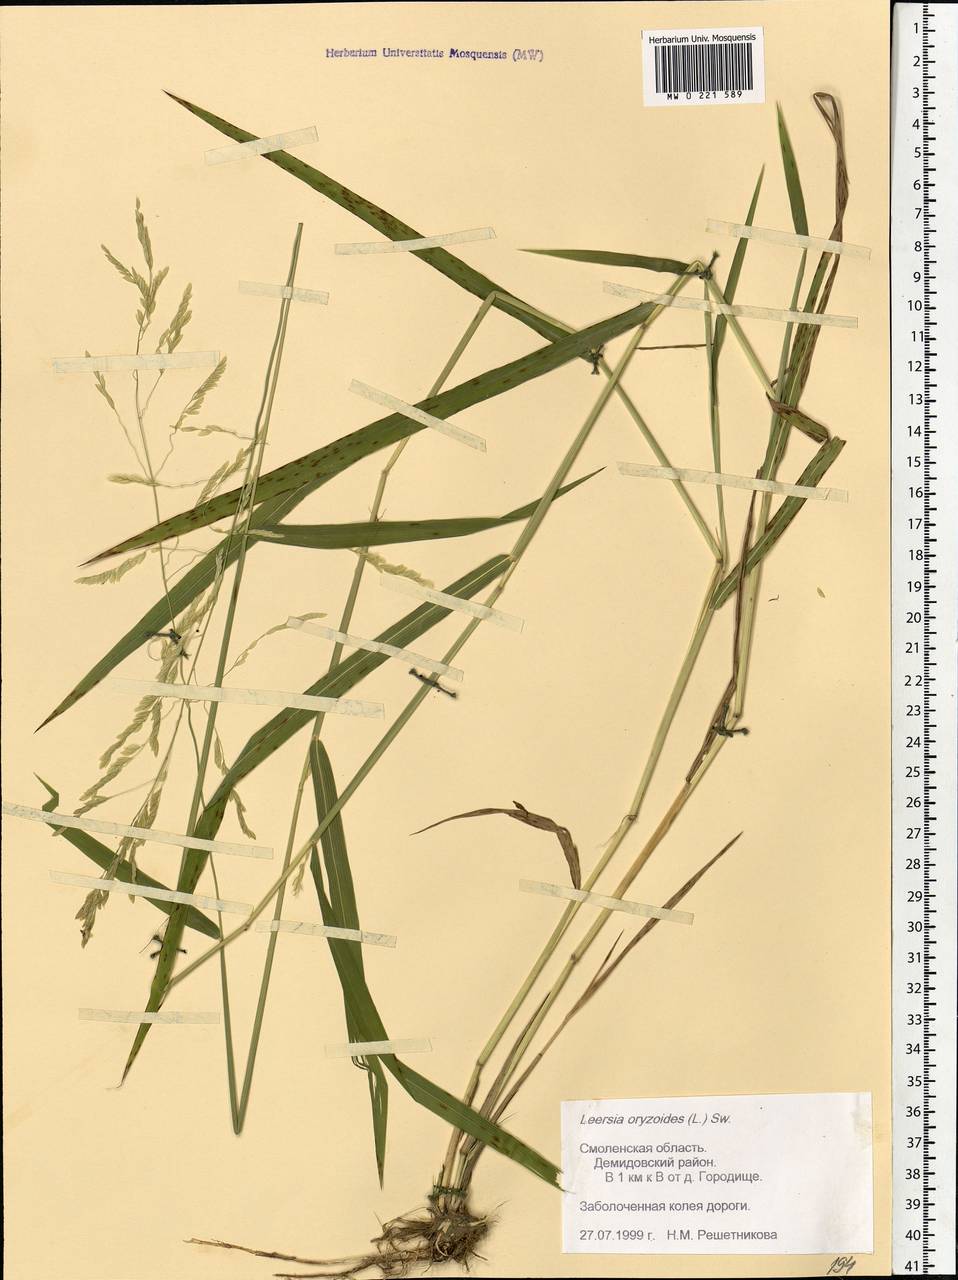 Leersia oryzoides (L.) Sw., Eastern Europe, Western region (E3) (Russia)